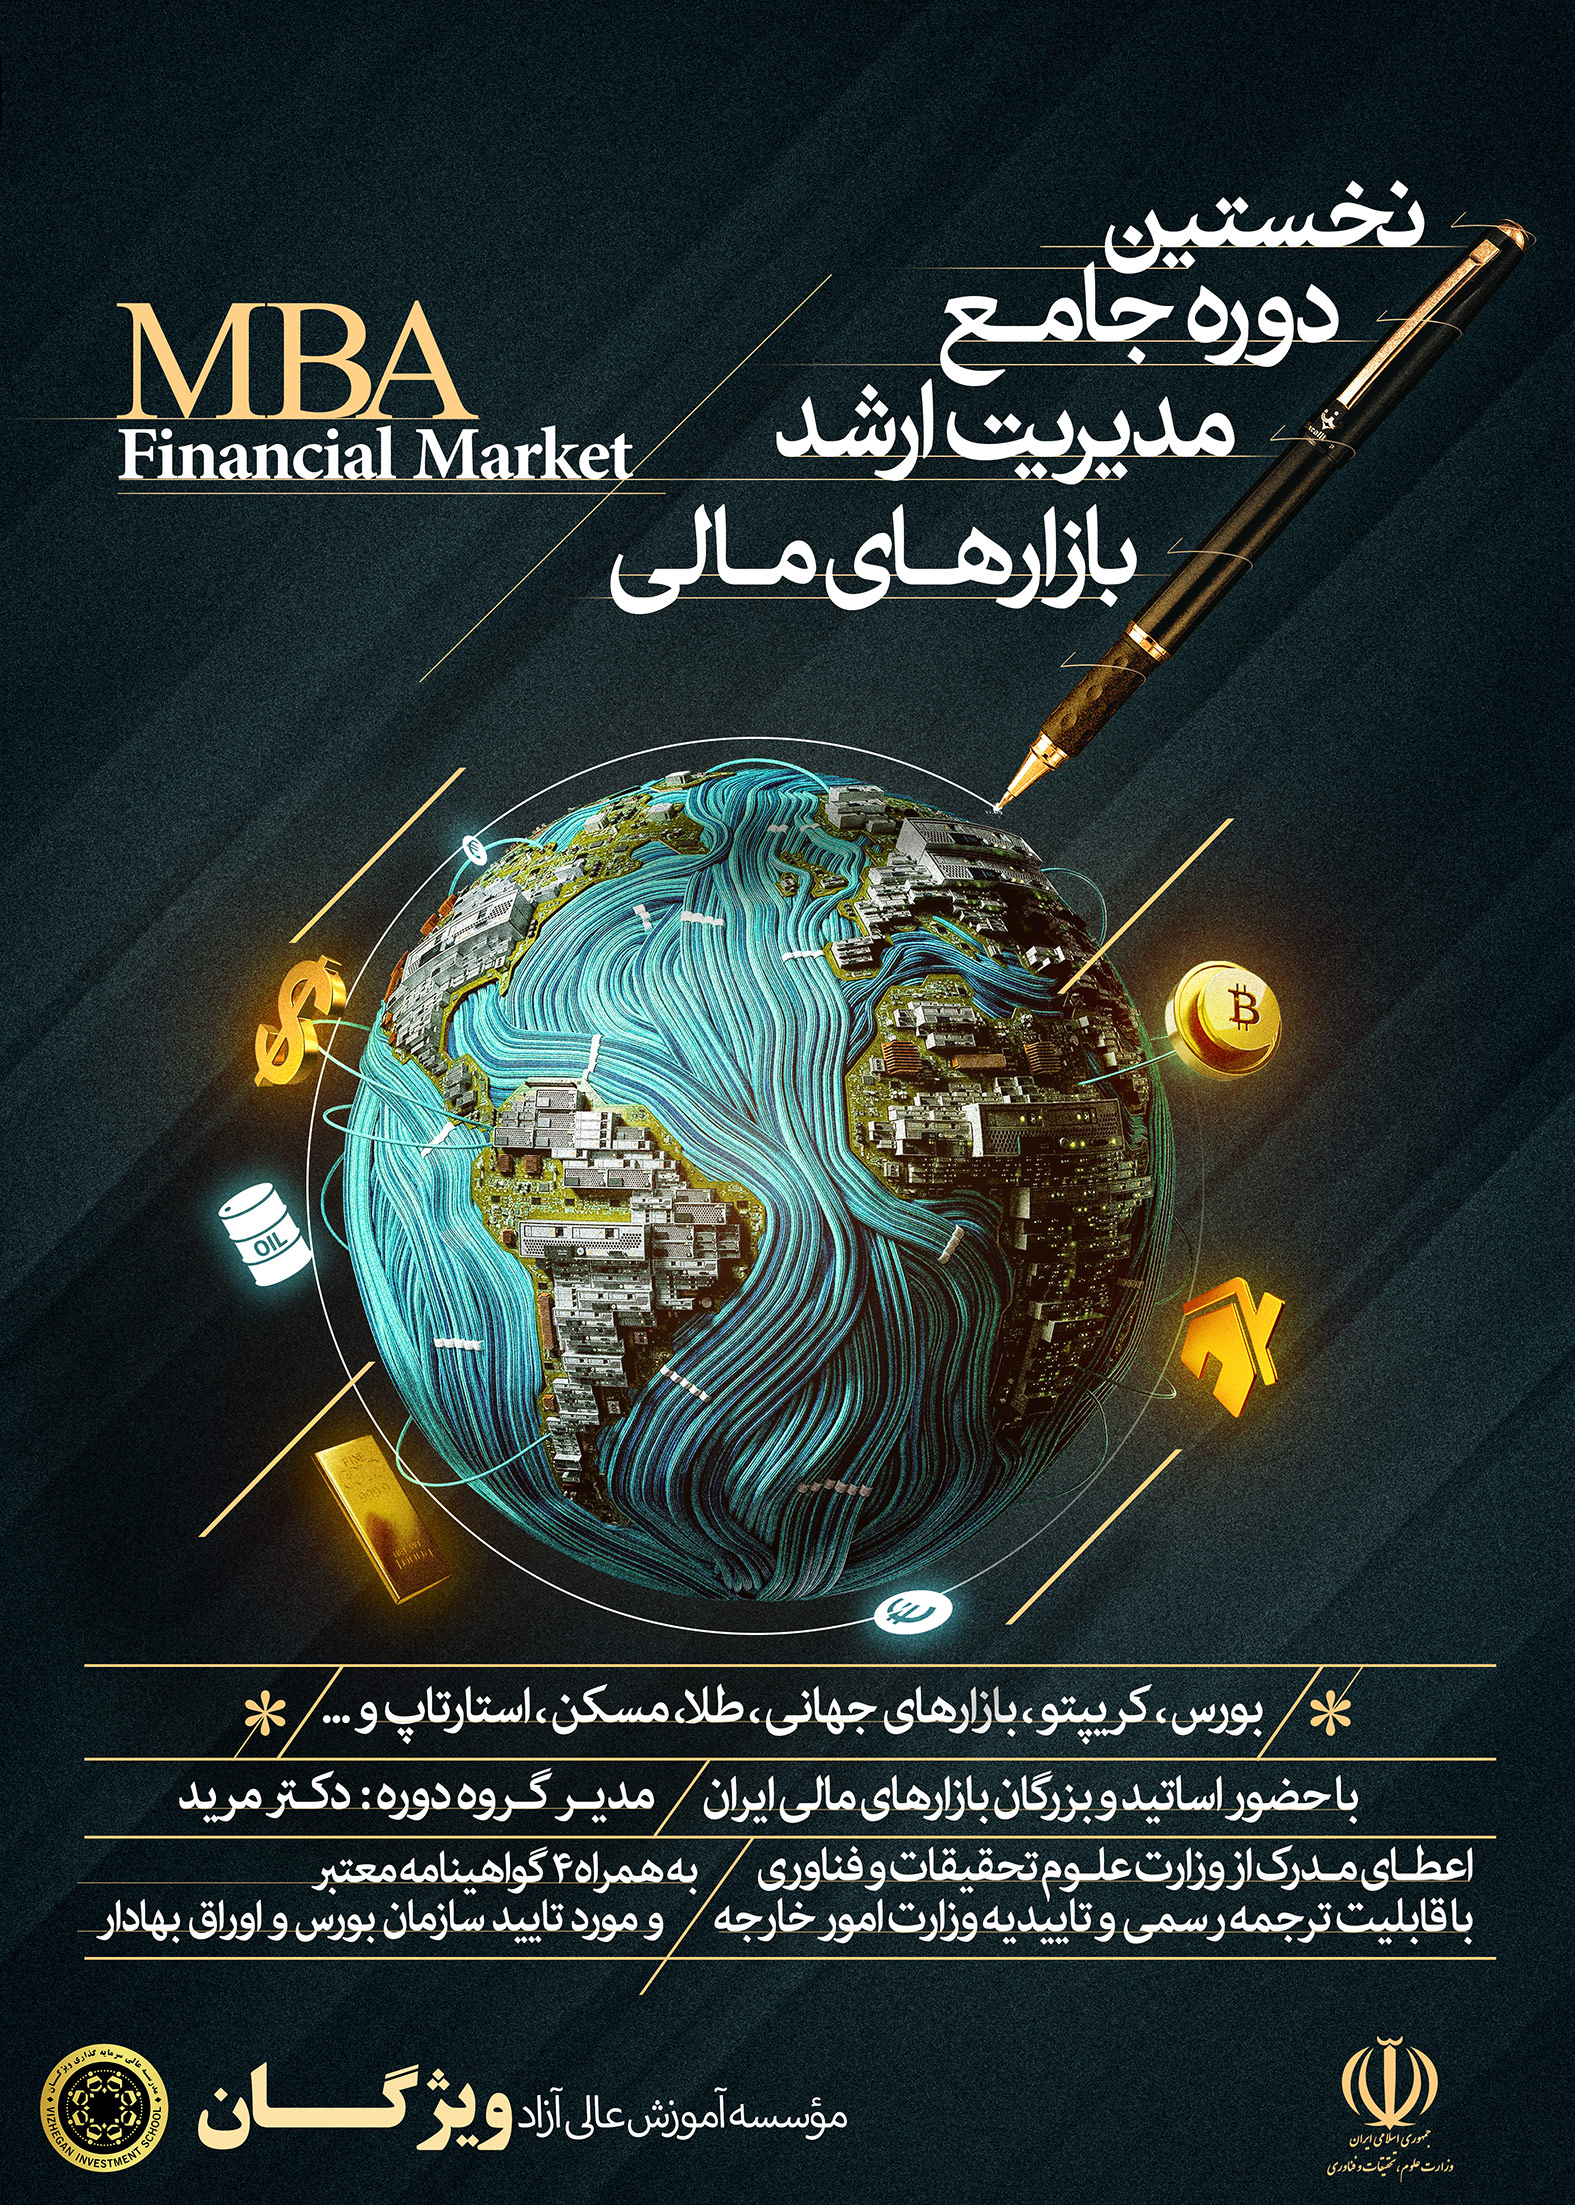 mba بازار های مالی ; MBA بازار سرمایه ; ویژگان ; آموزش ارز دیجیتال ; آموزش بورس ; آموزش فارکس